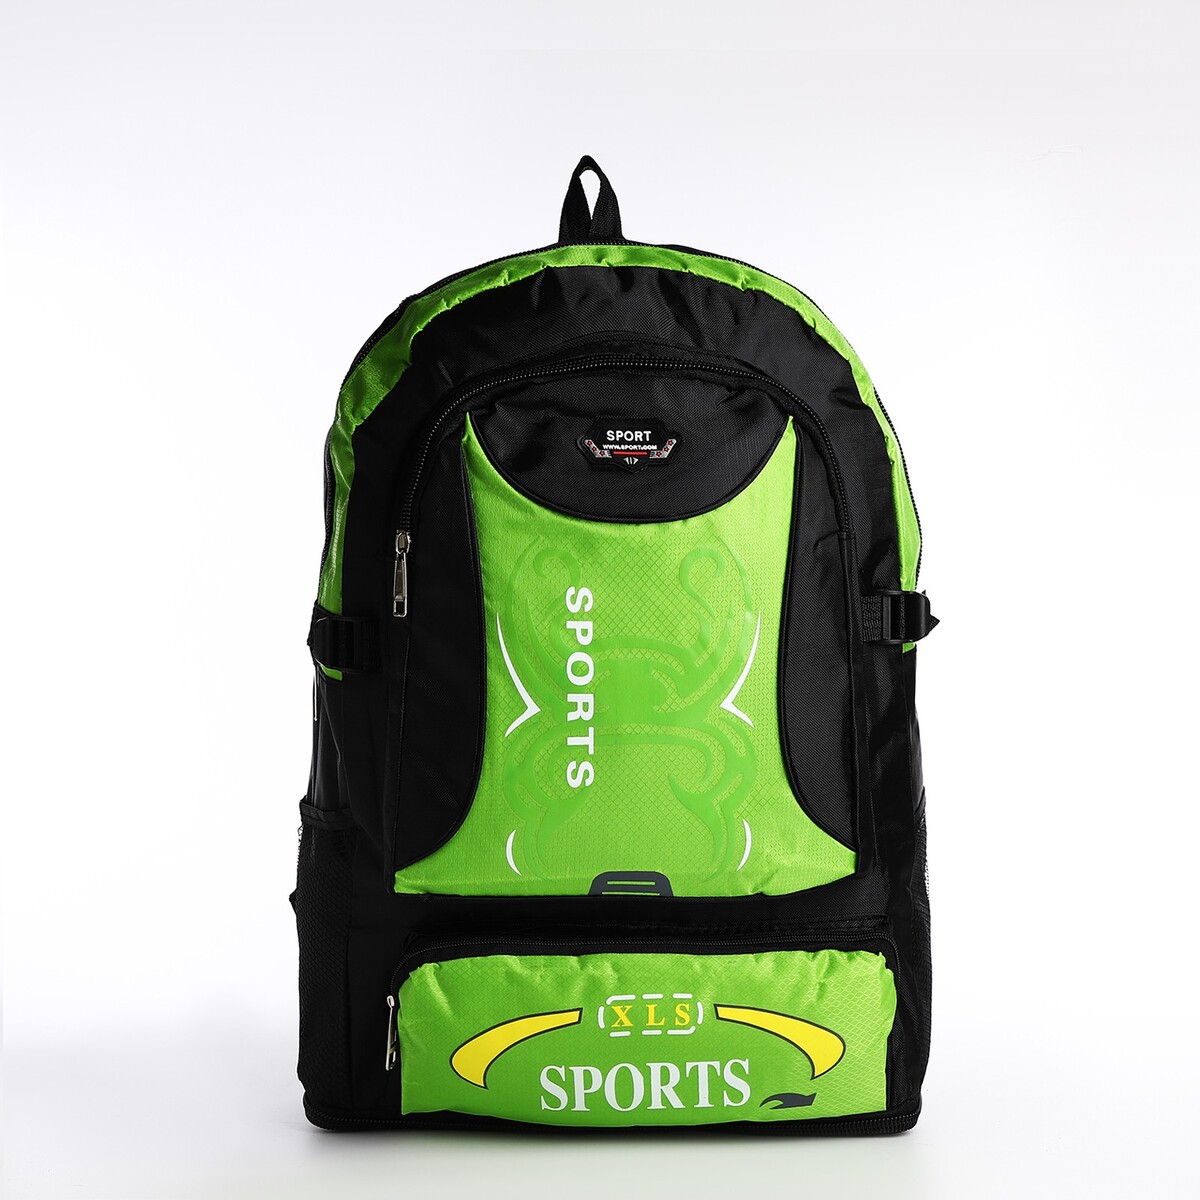 Рюкзак на молнии с увеличением, 55л, 5 наружных карманов, цвет зеленый рюкзак на молнии с увеличением 55л 5 наружных карманов зеленый